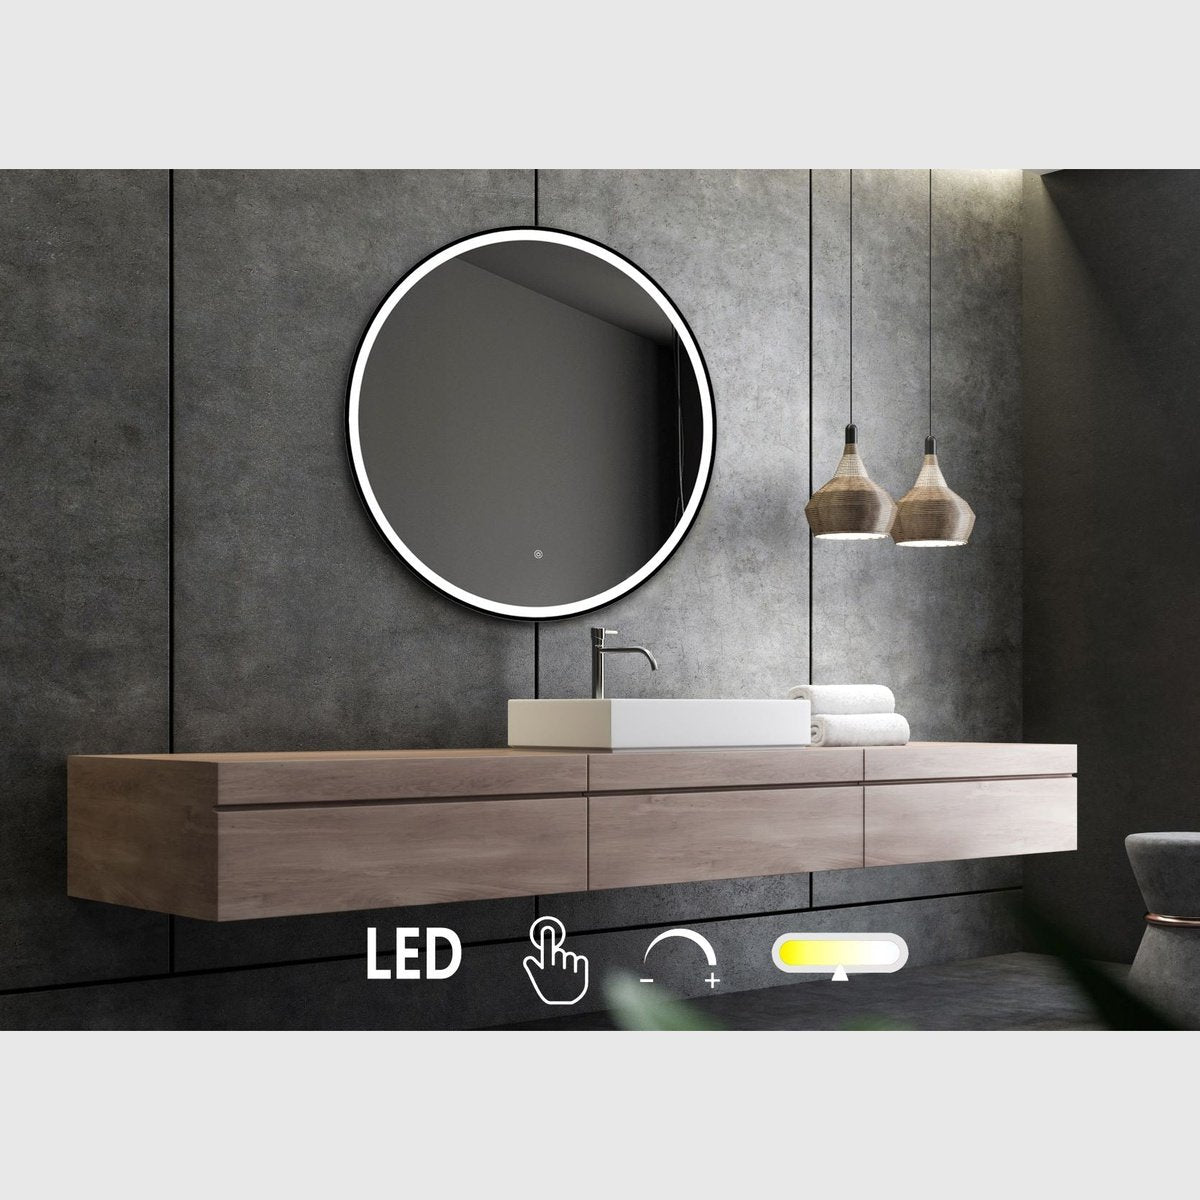 Se Nordic Bad Janni-2 rundt spejl med sort ramme og front belysning - Ø60 hos Bad&Design